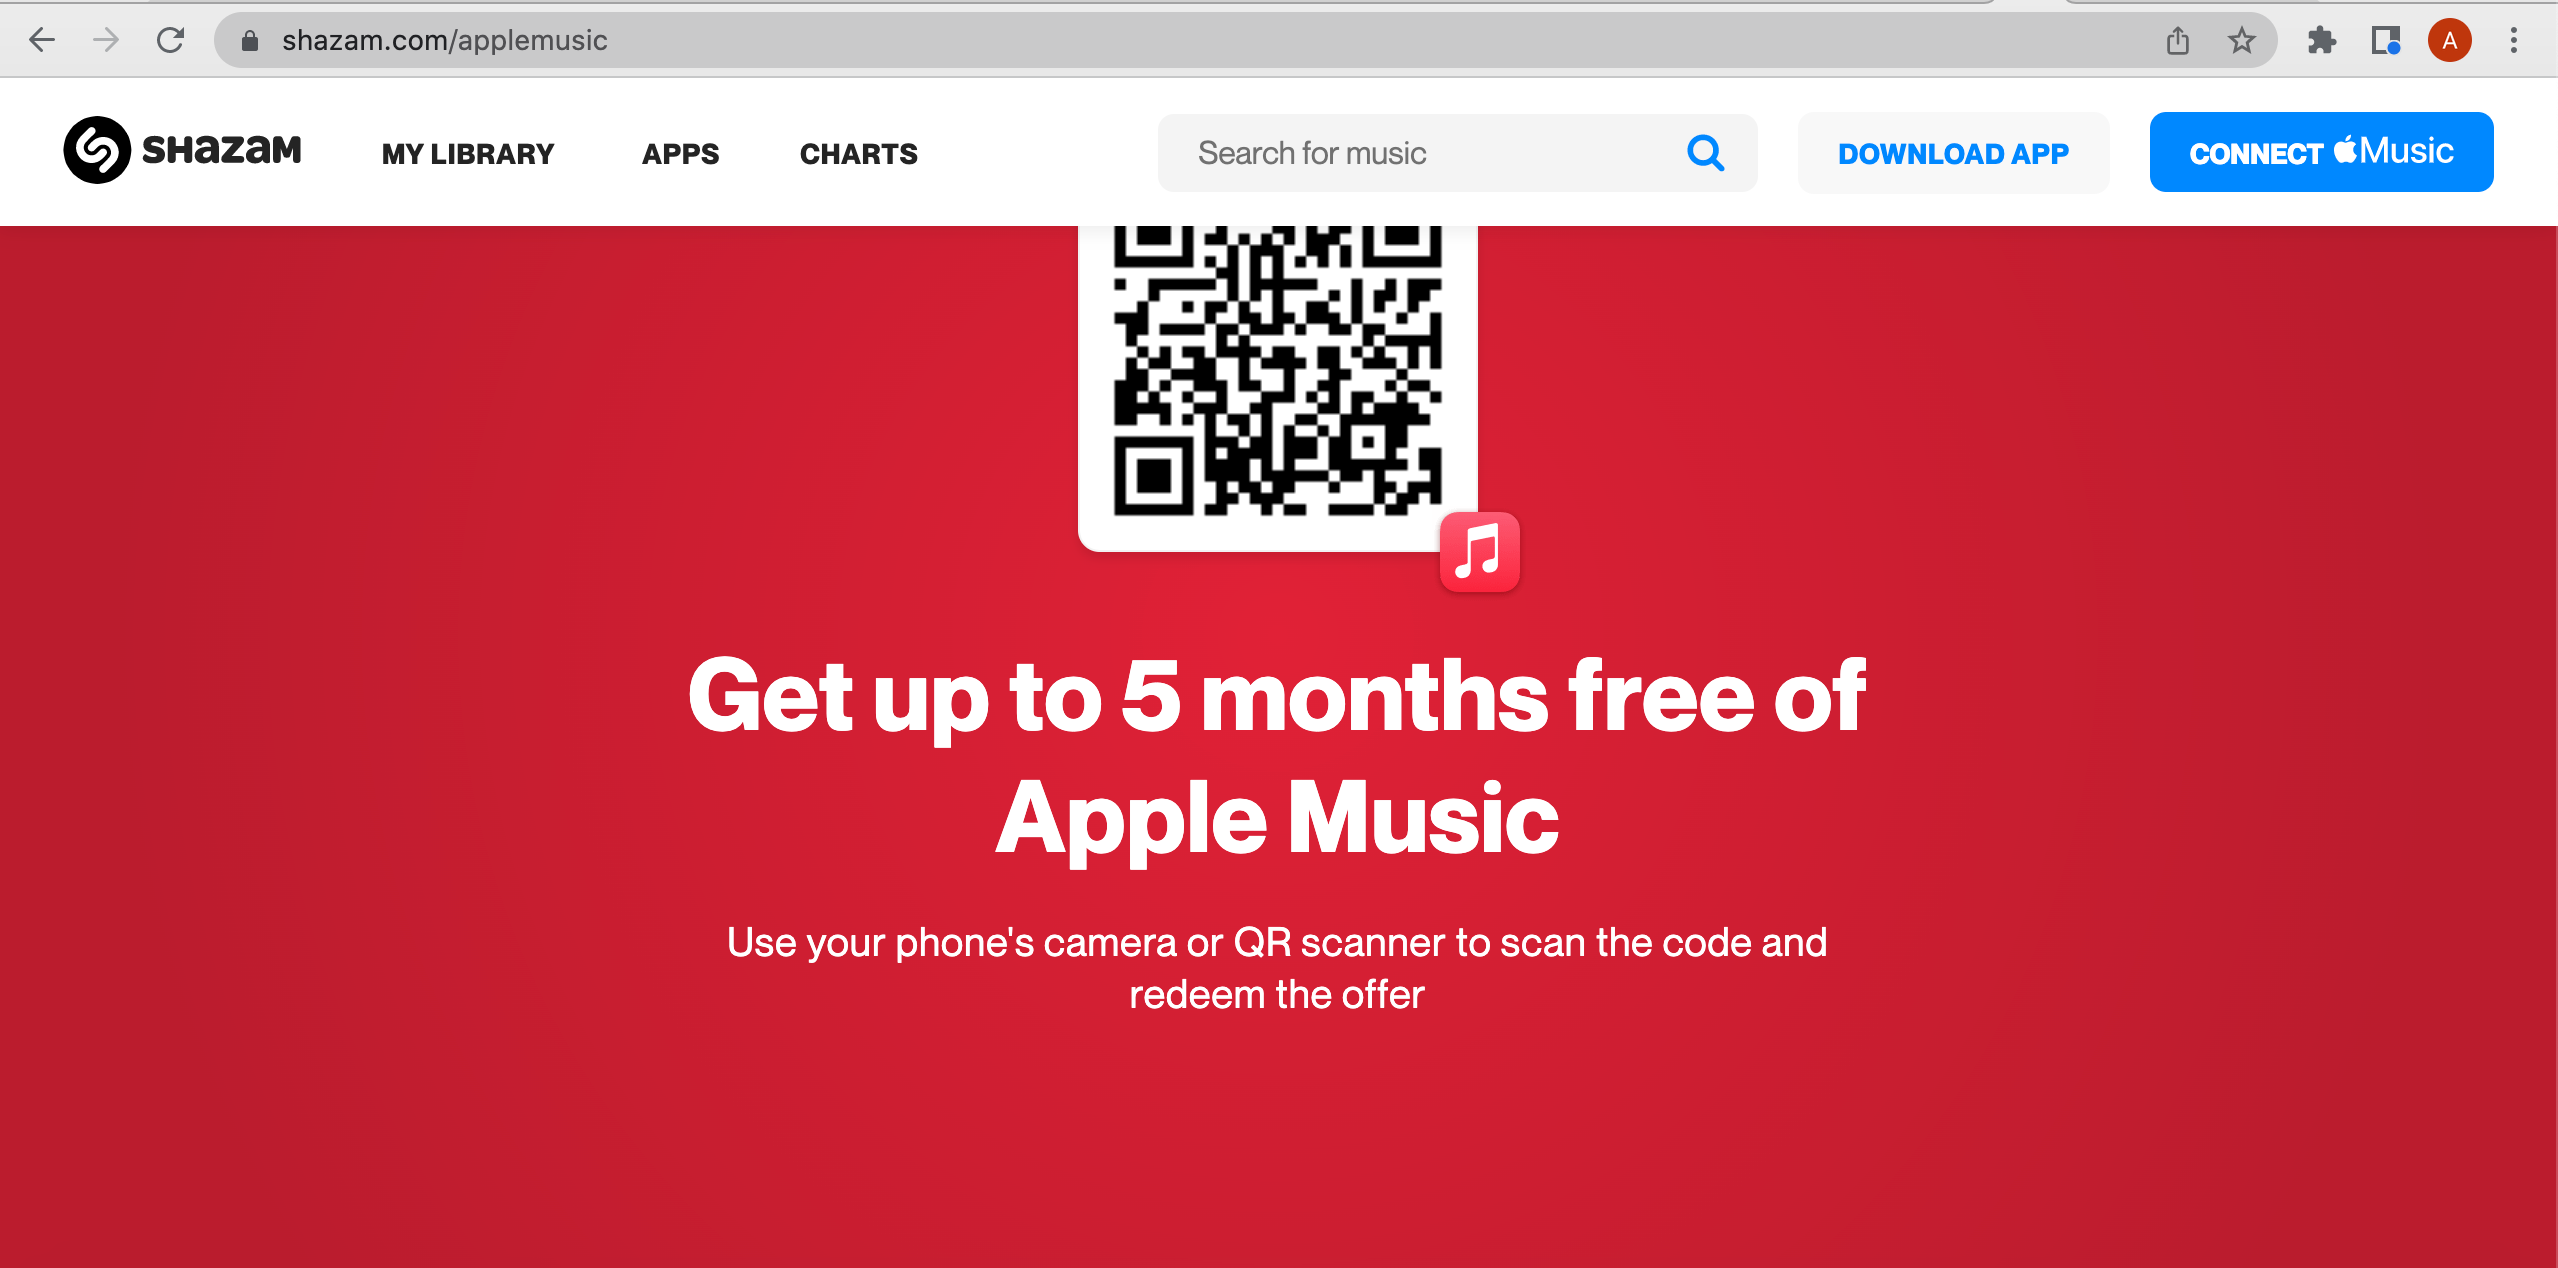 screenshot-of-apple-music-offer-on-shazam-website-desktop-view-1